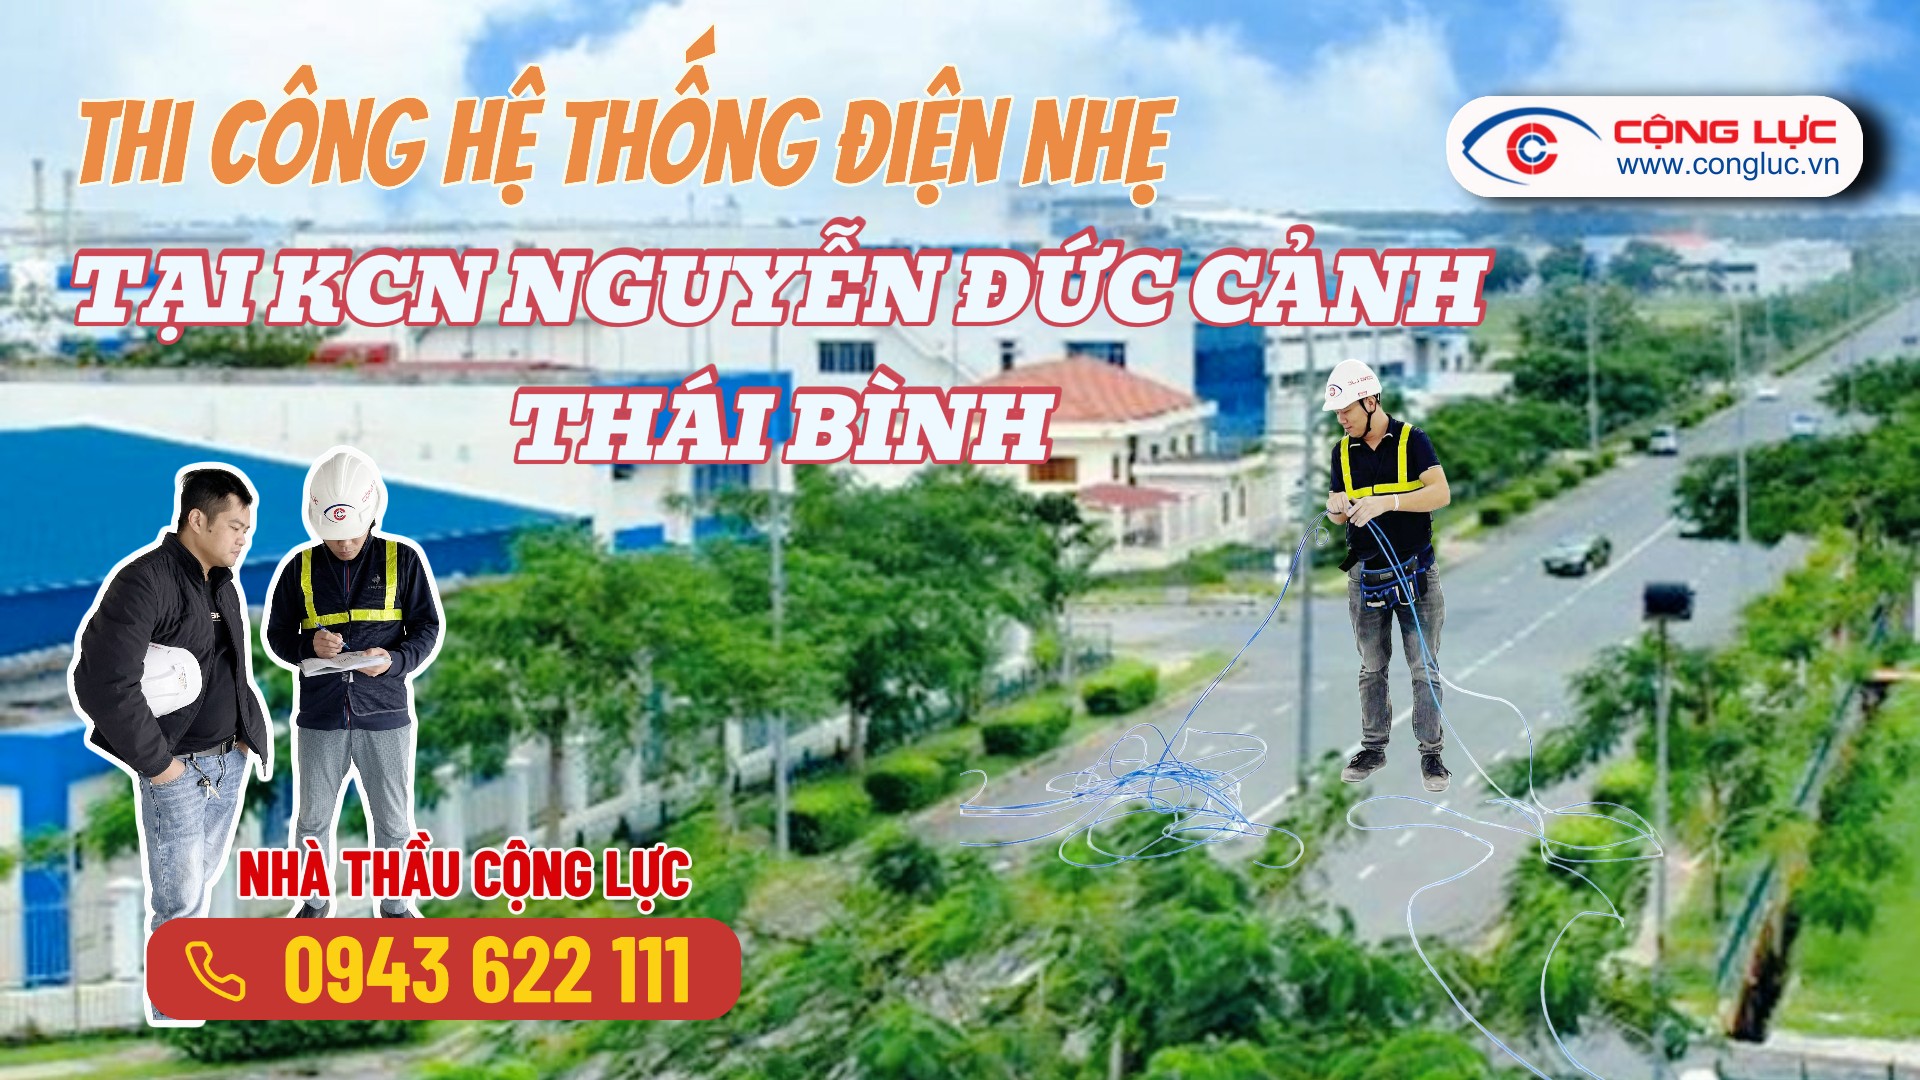 Thi Công Trọn Gói Hệ Thống Điện Nhẹ Tại KCN Nguyễn Đức Cảnh Thái Bình